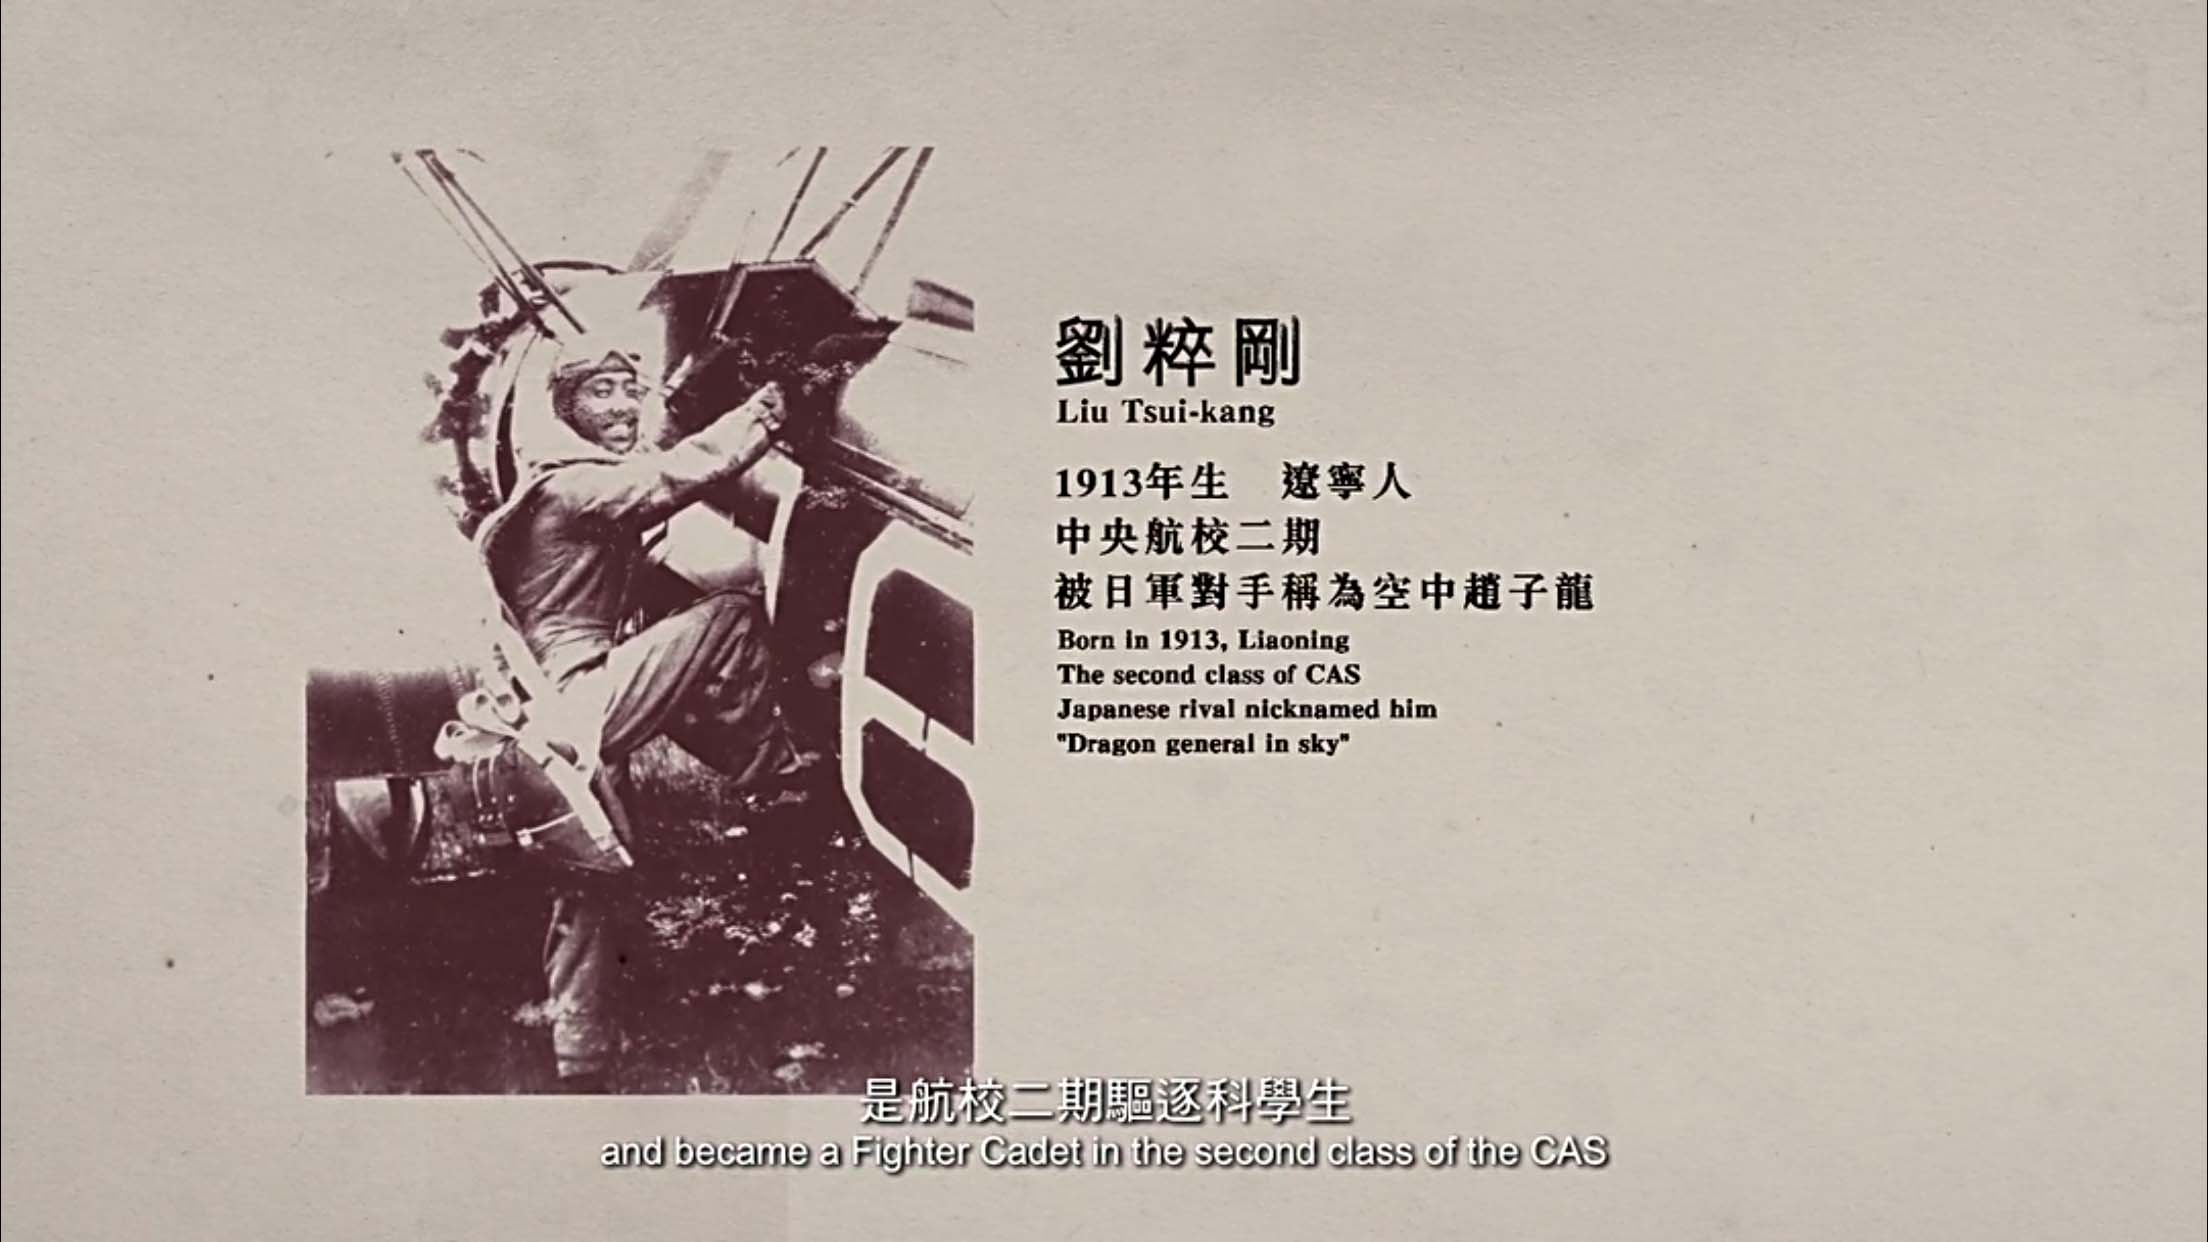 这其中,刘粹刚是中央航校二期驱逐科学生,他的空中命中率高达九成,被